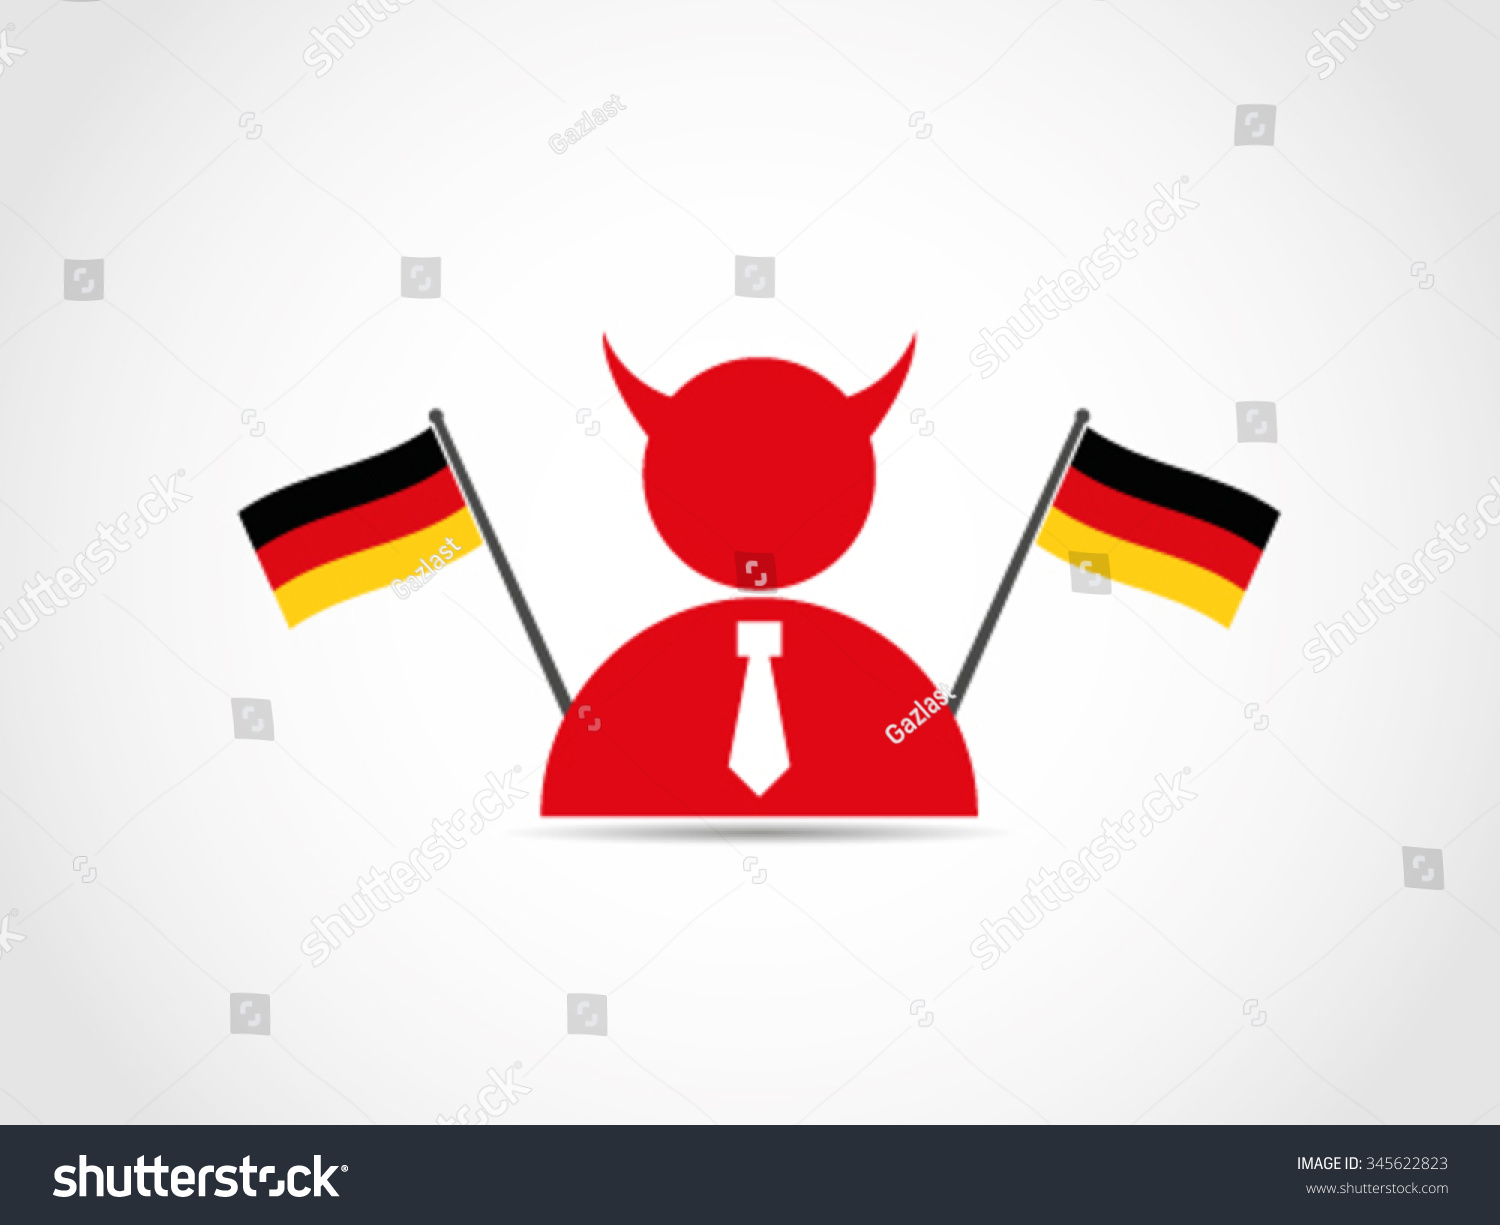 Evil German